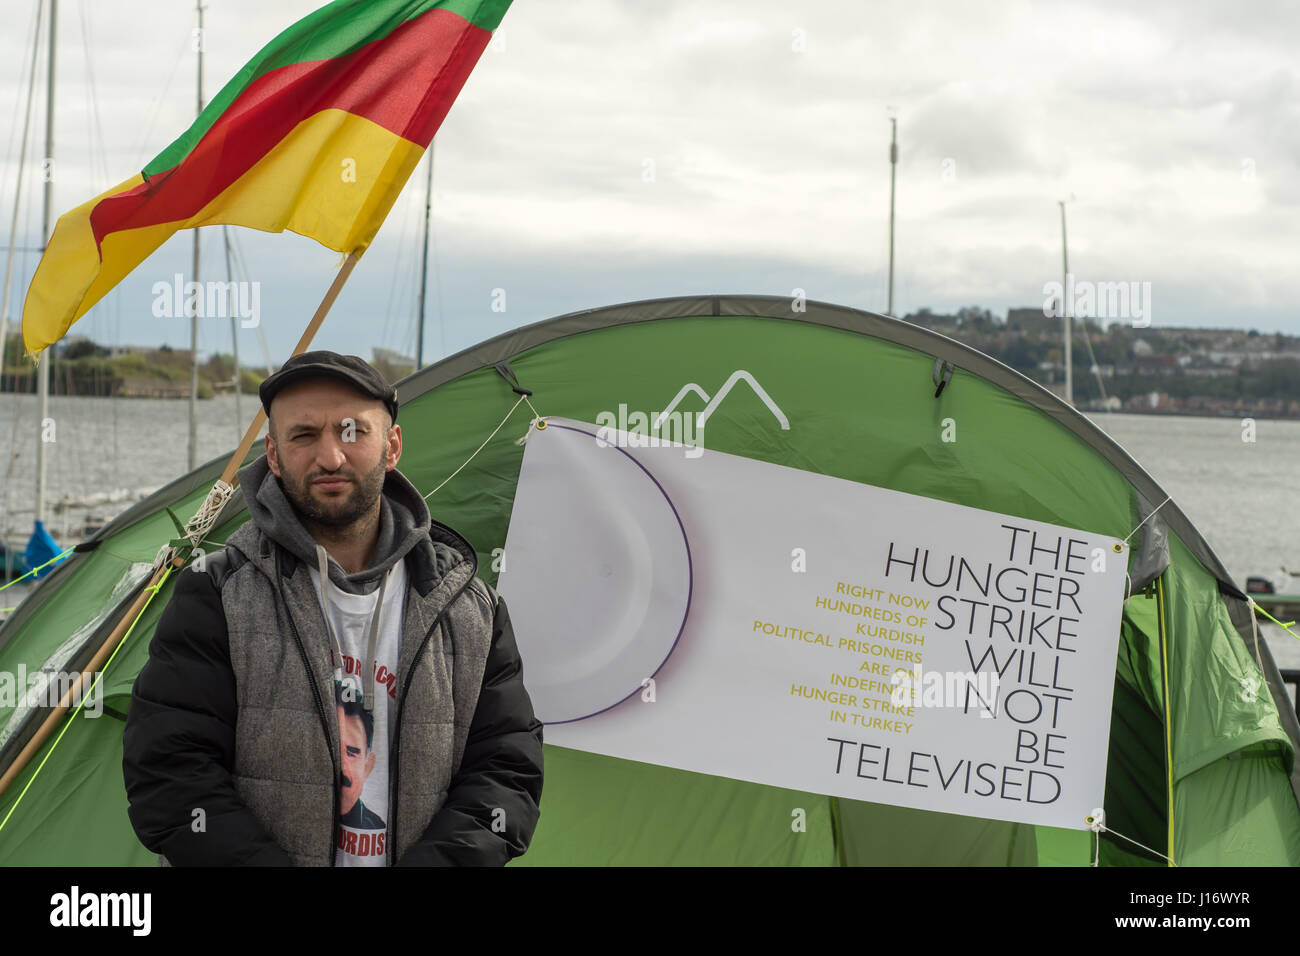 El Imam Sis fuera Senedd la realización de huelga de hambre. Protesta de solidaridad curda polital Gales en apoyo de los presos encarcelados en Turquía Foto de stock